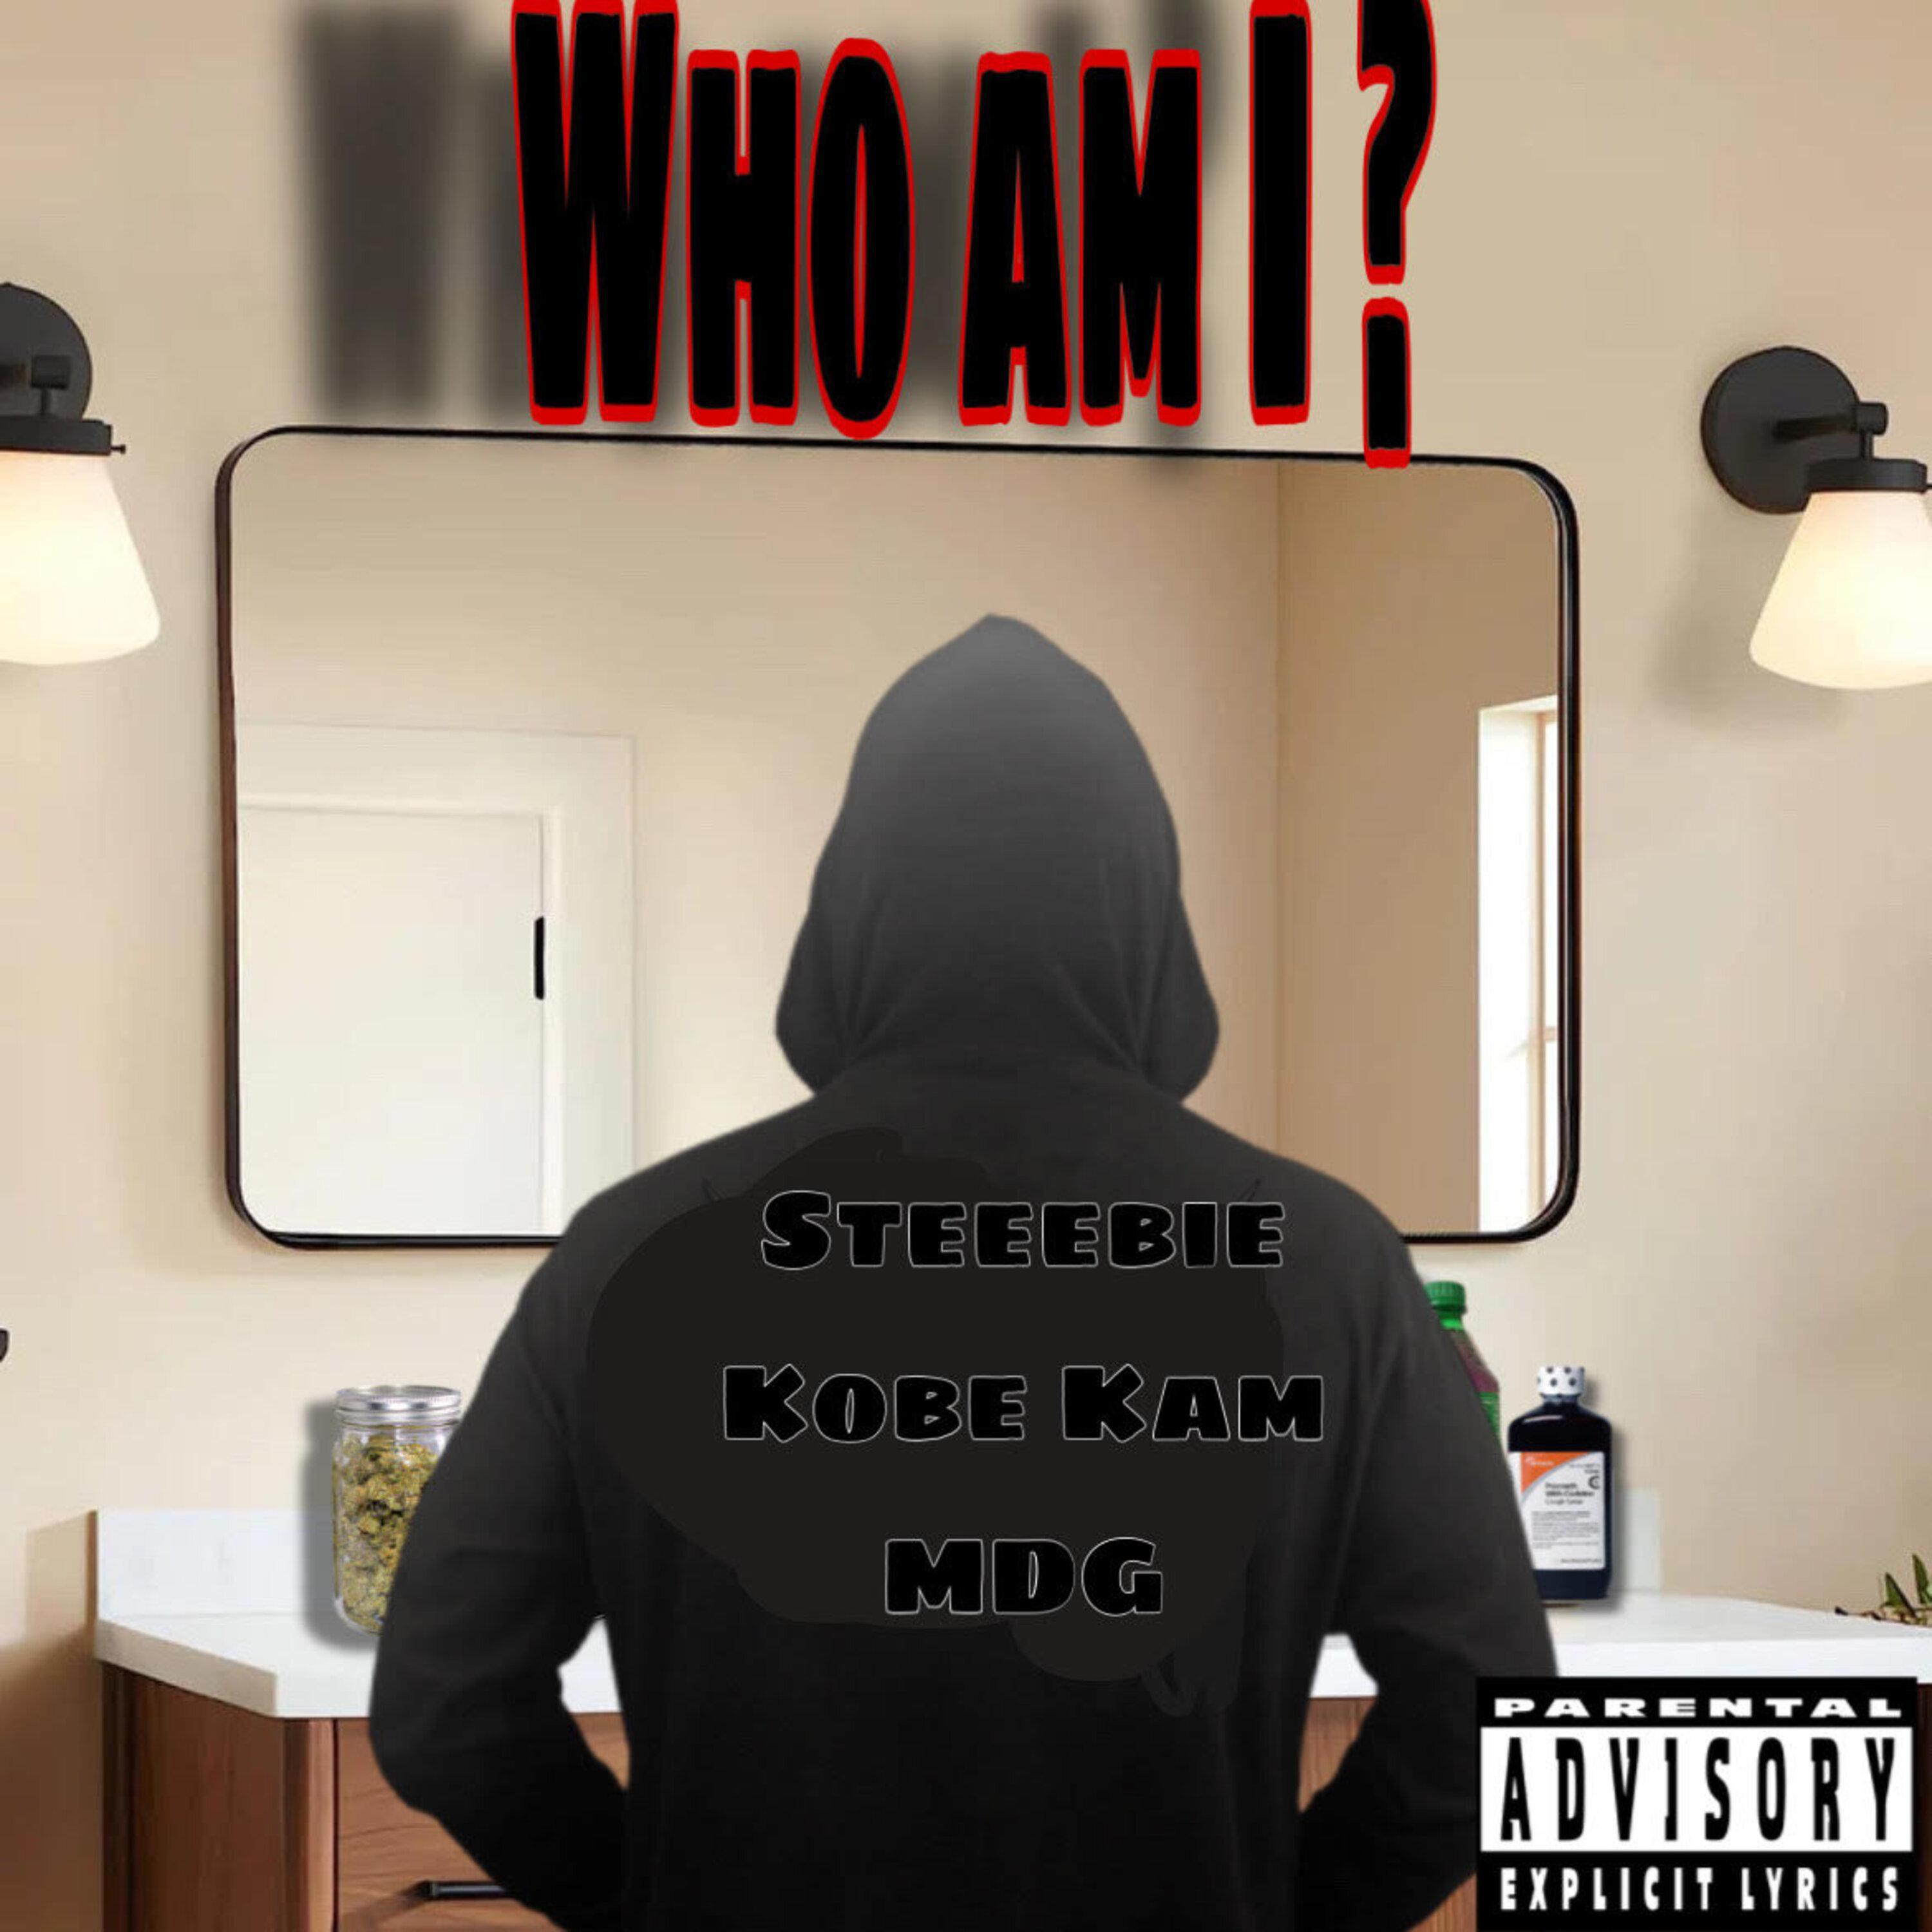 Steeebie - Who Am I